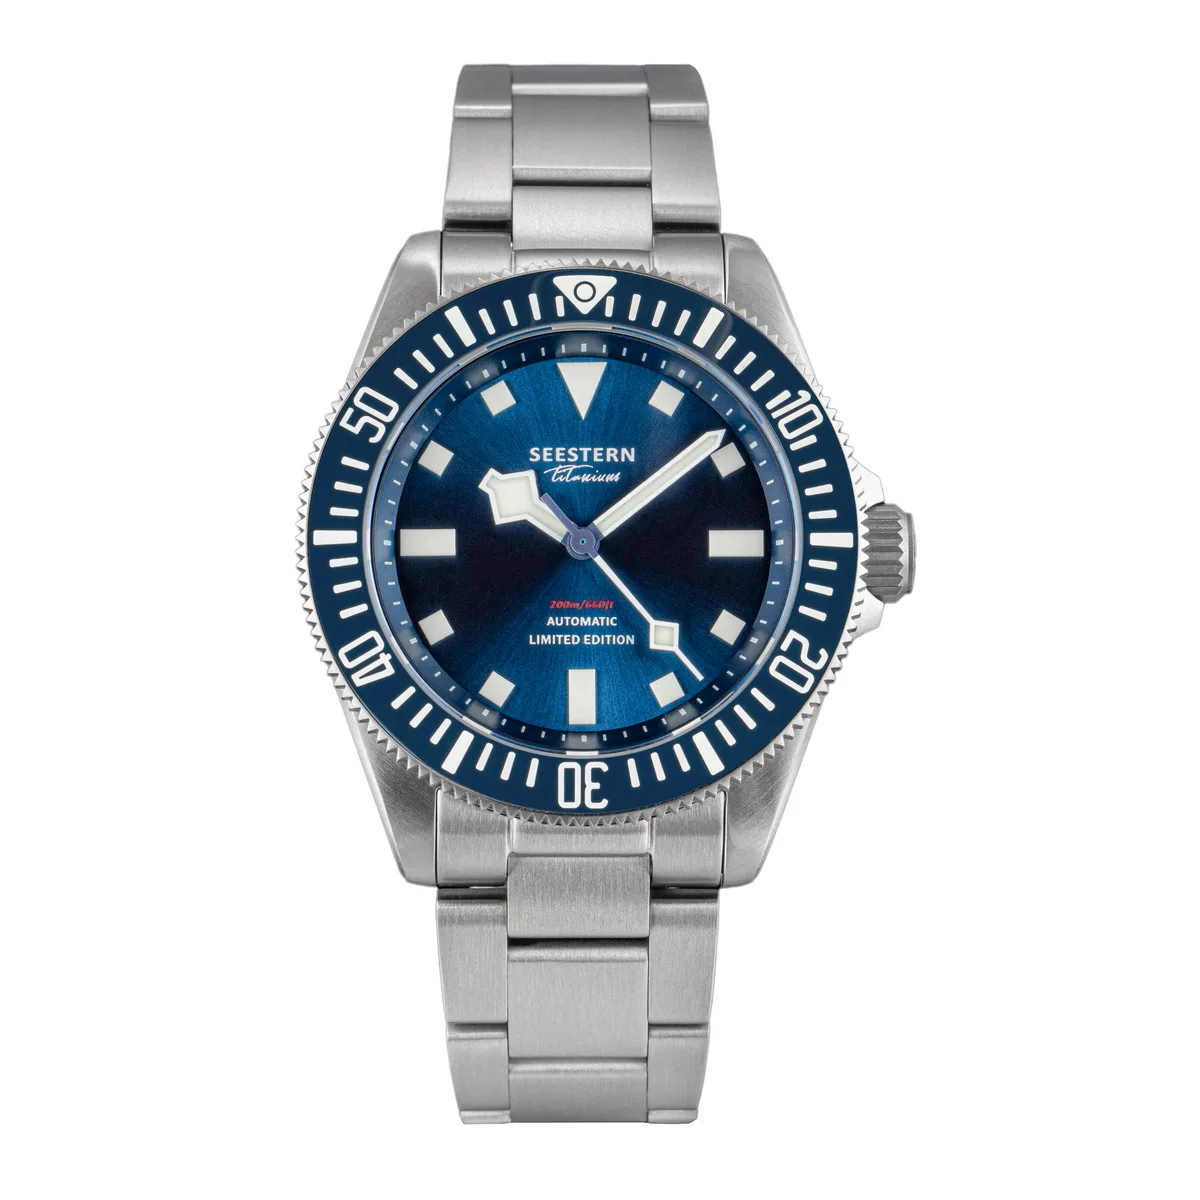  automatic mechanical wristwatch nh38 movement sapphire glass 20atm waterproof luminous thumb200